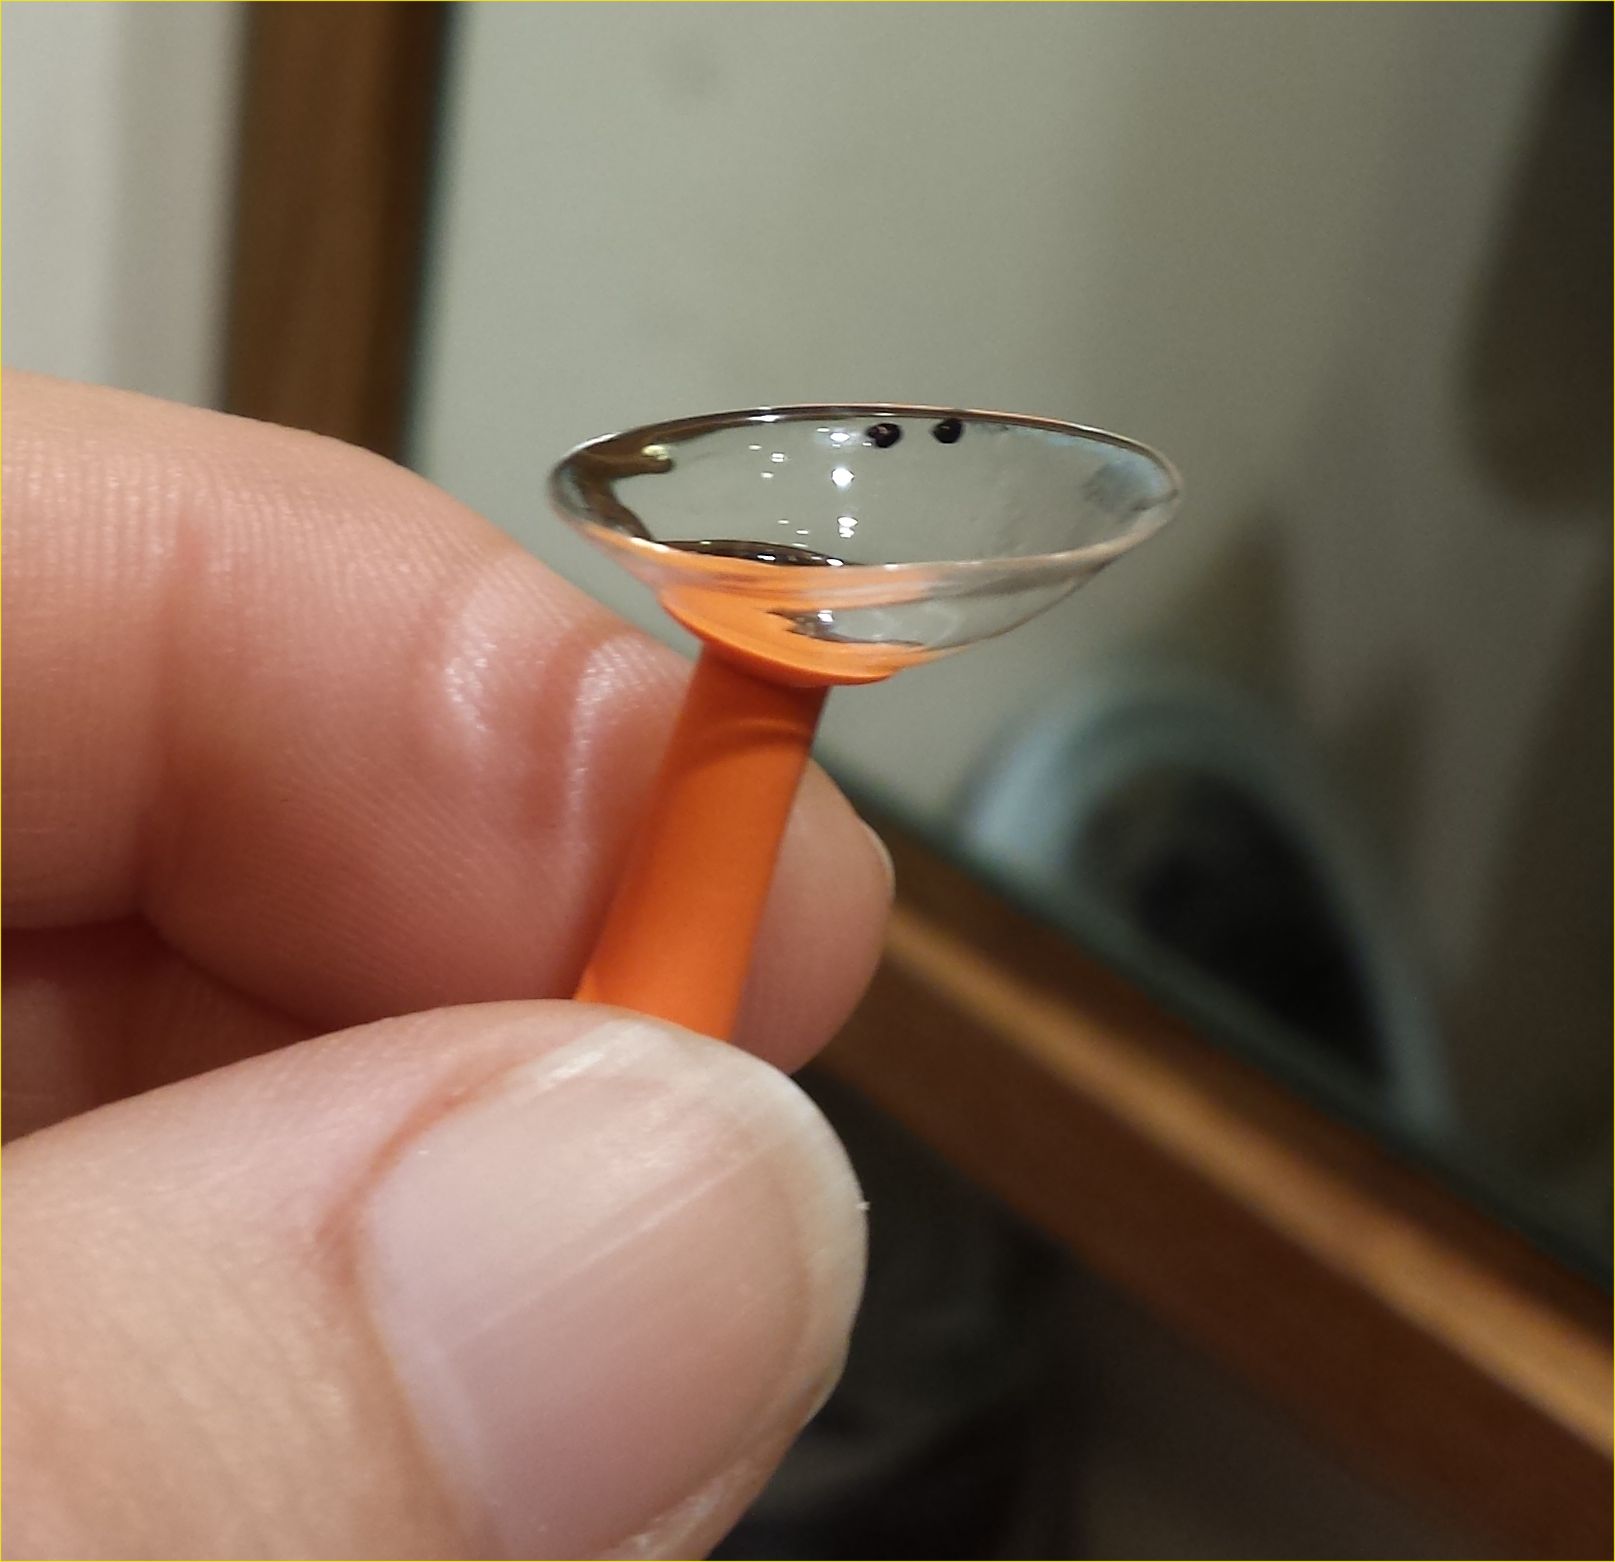 Scleral Lens On Plunger